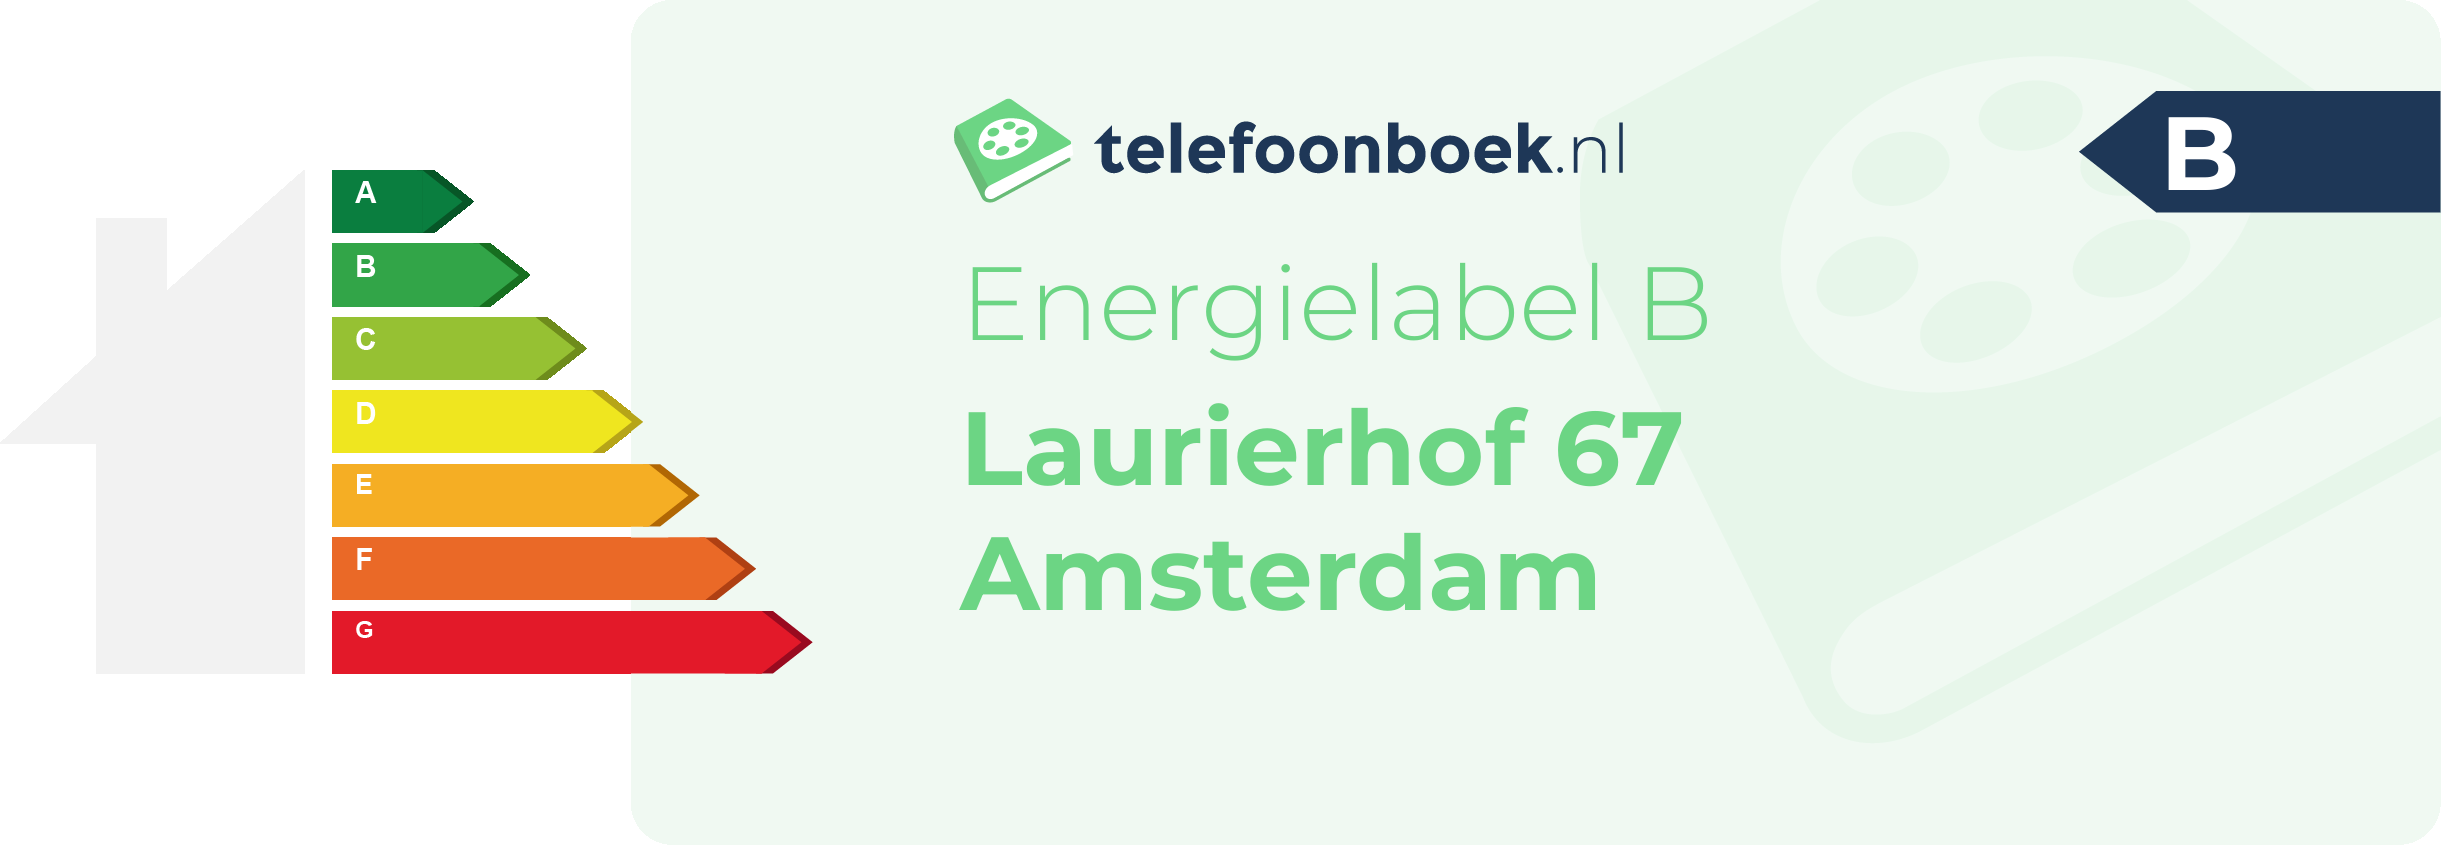 Energielabel Laurierhof 67 Amsterdam